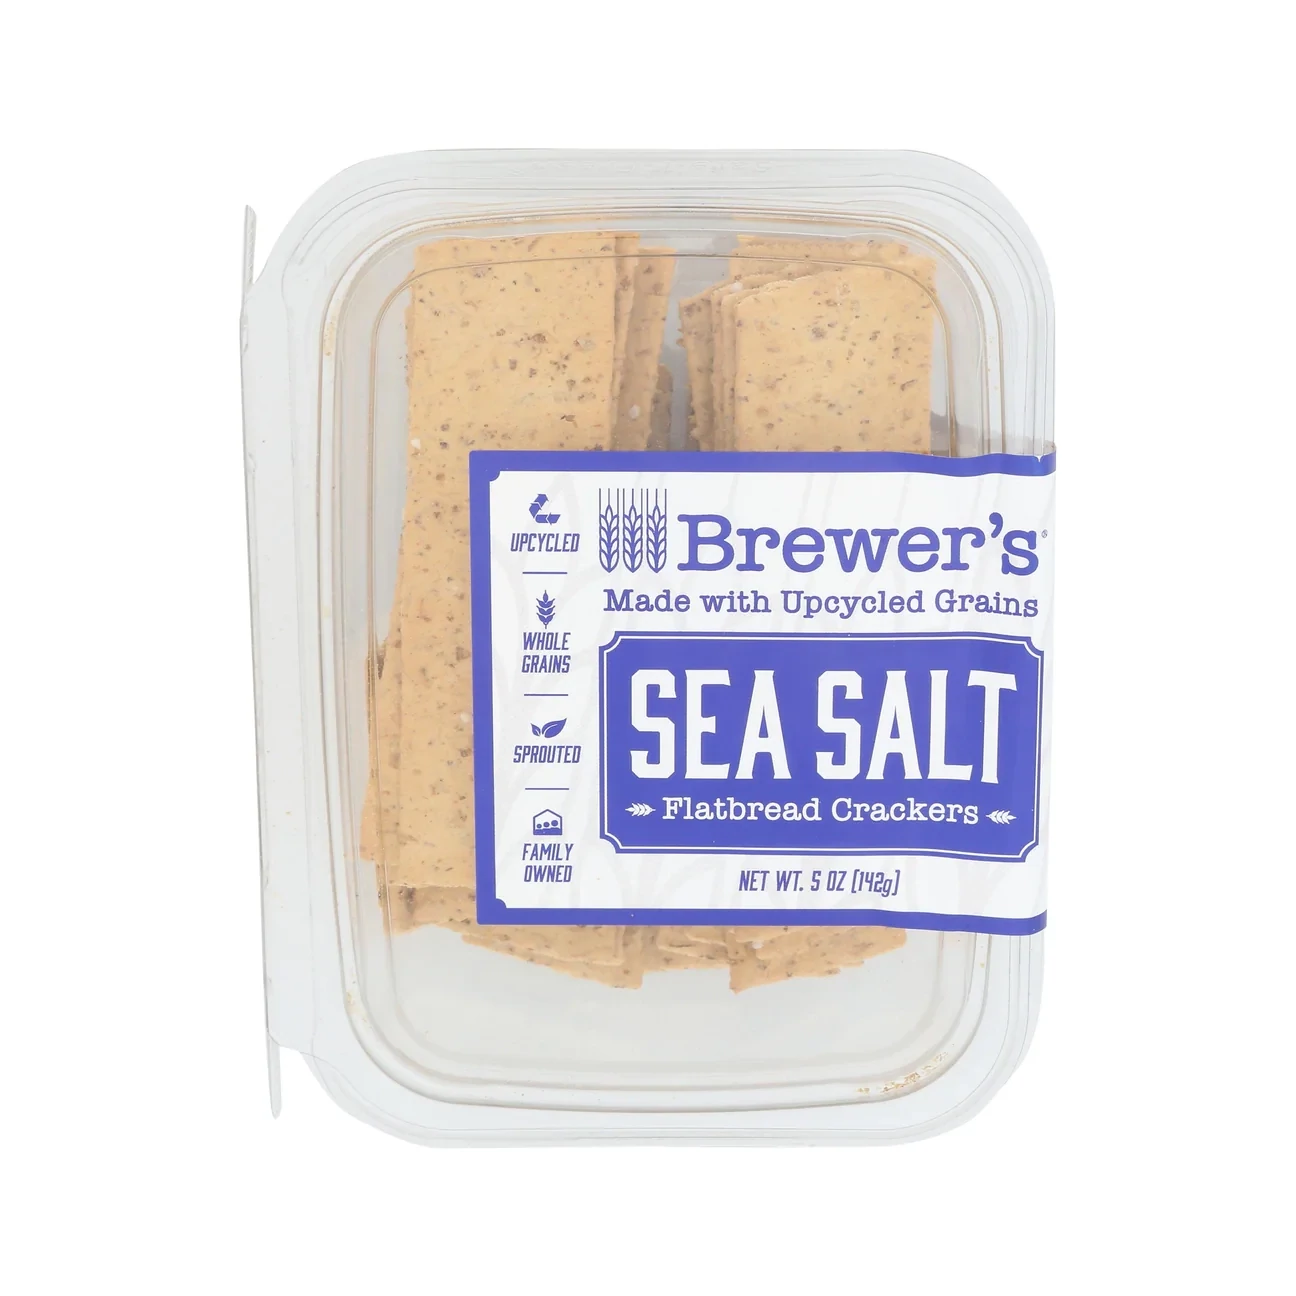 Sea Salt Flatbread Crackers